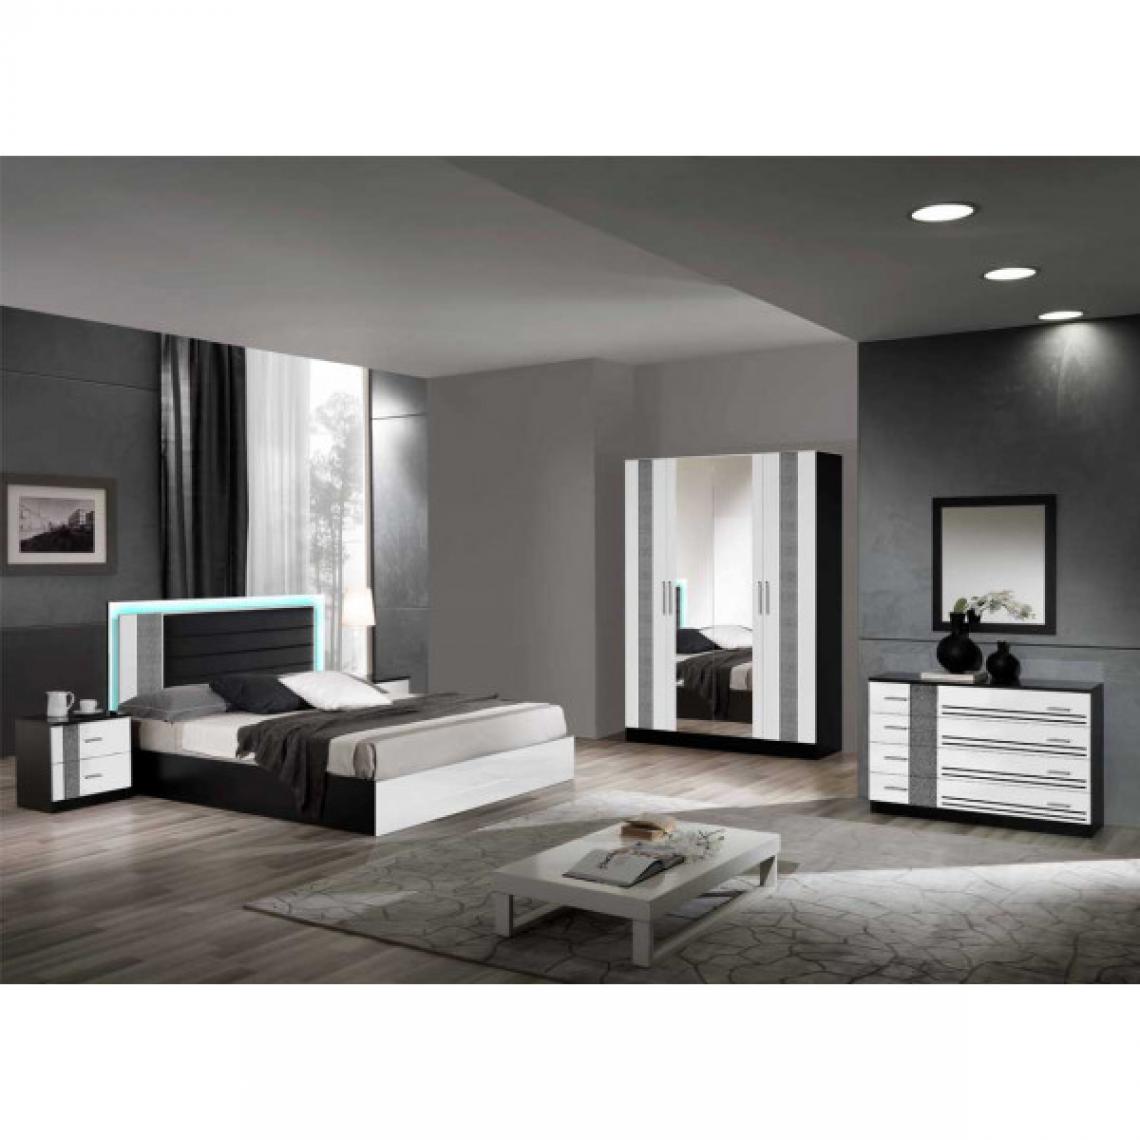 Dansmamaison - Chambre complète 160x200 Noir/Blanc à LED - RAVENO N°2 - L 165 x l 206 x H 106 cm - Chambre complète